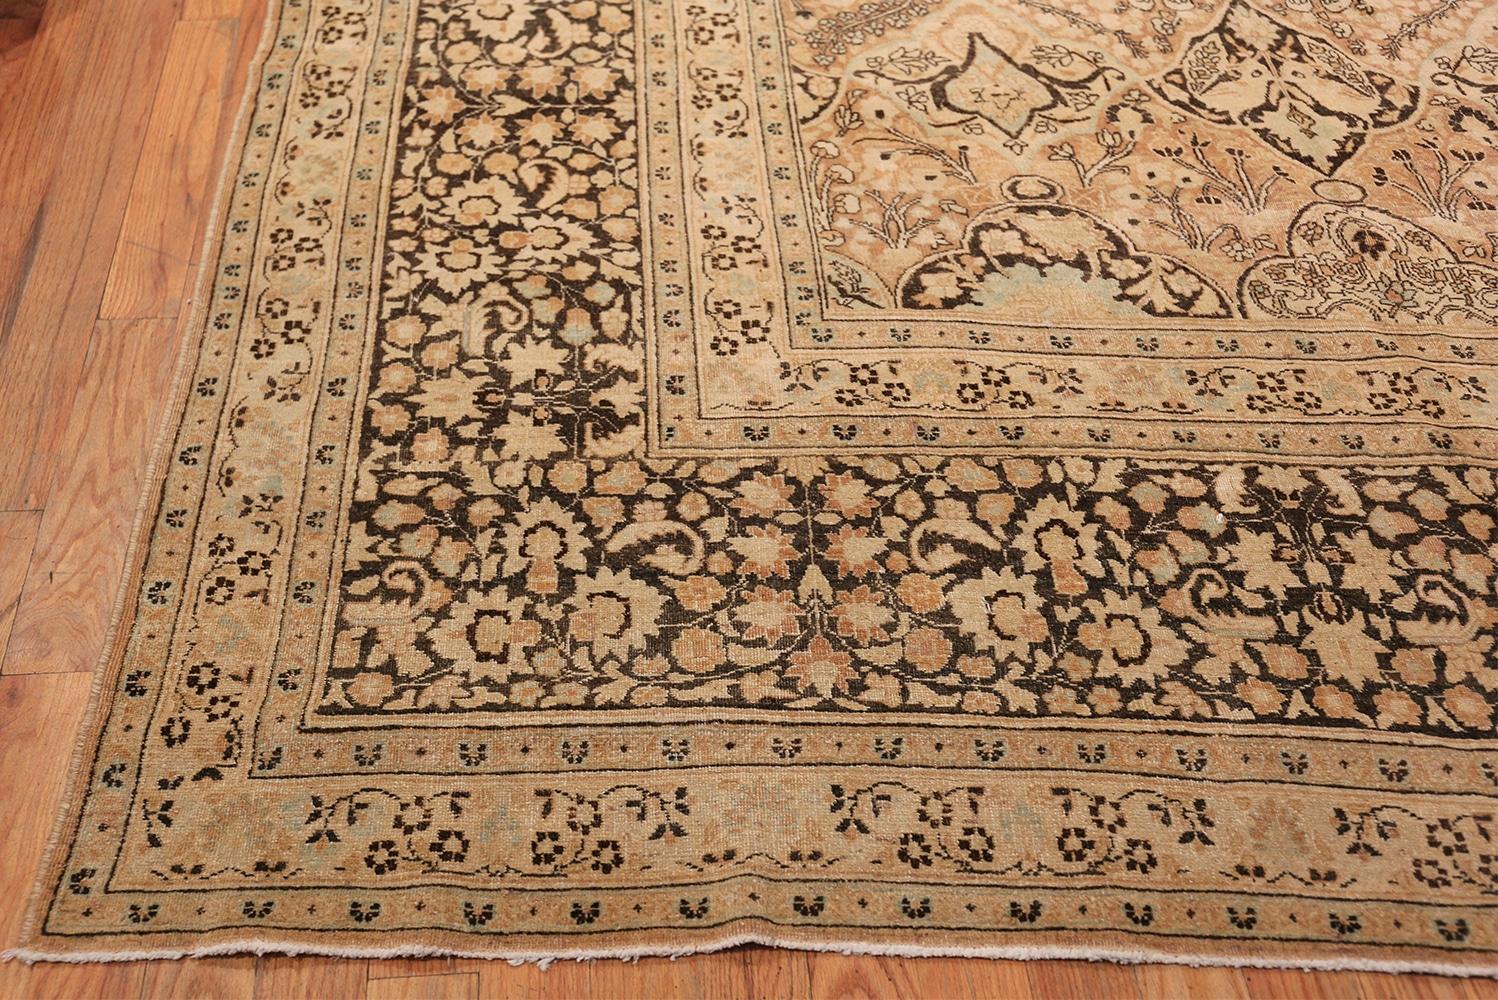 Äußerst dekorativer großer überdimensionaler antiker persischer Khorassan Teppich, Herkunftsland / Teppichart: Persische Teppiche, CIRCA Datum: 1920. Größe: 4,06 m x 8,33 m (13 ft 4 in x 27 ft 4 in)

